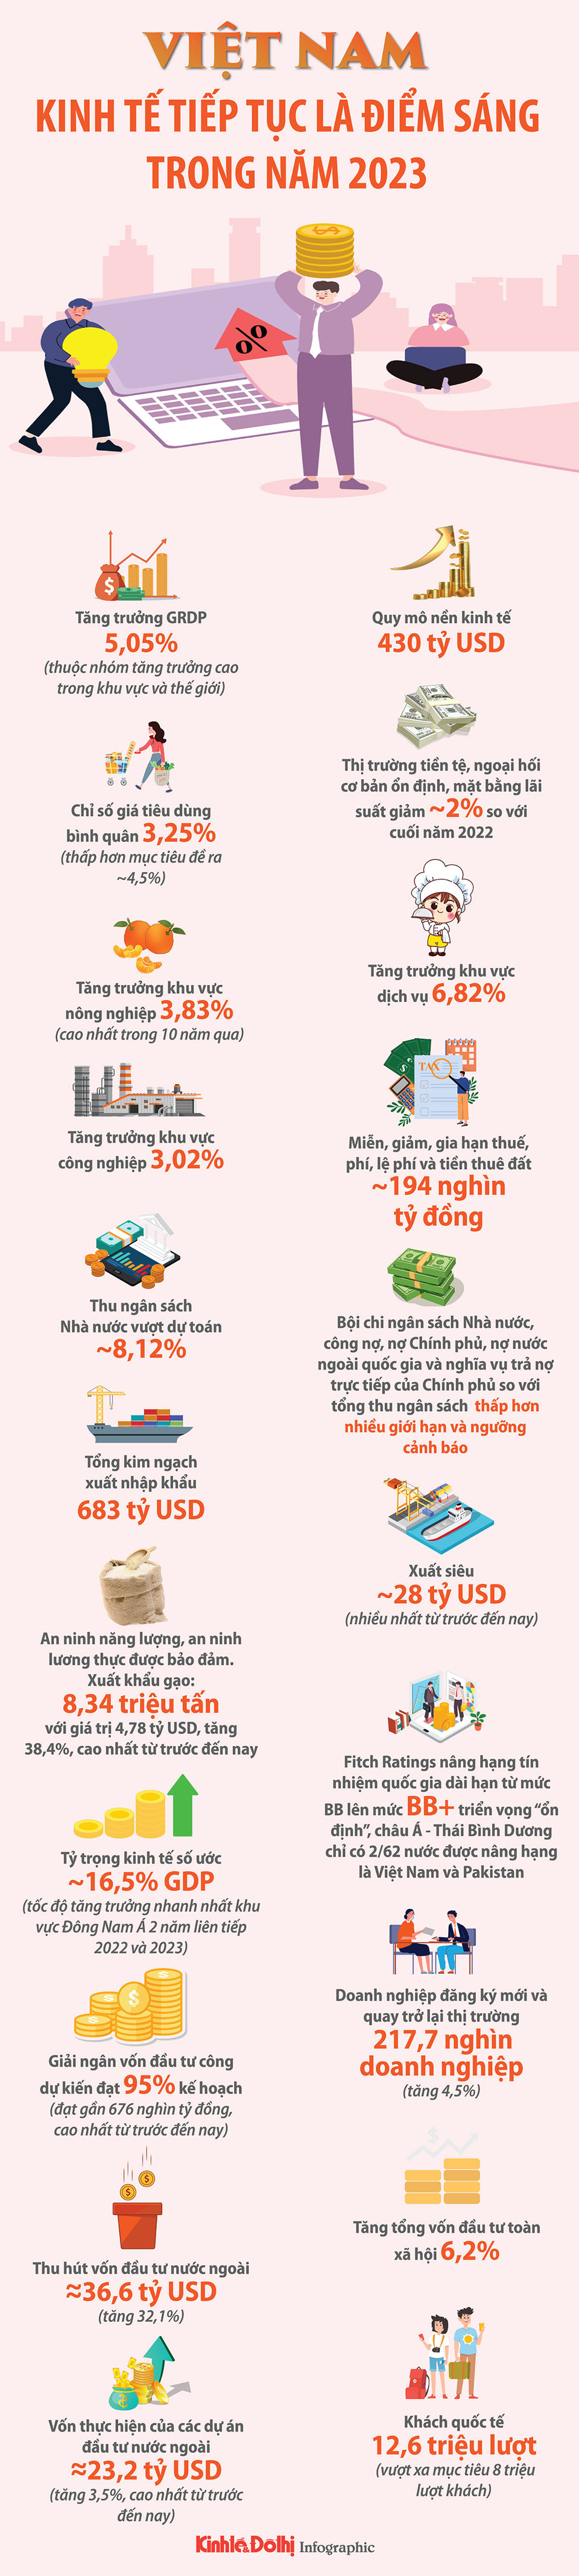 Kinh tế Việt Nam tiếp tục là điểm sáng năm 2023 - Ảnh 1